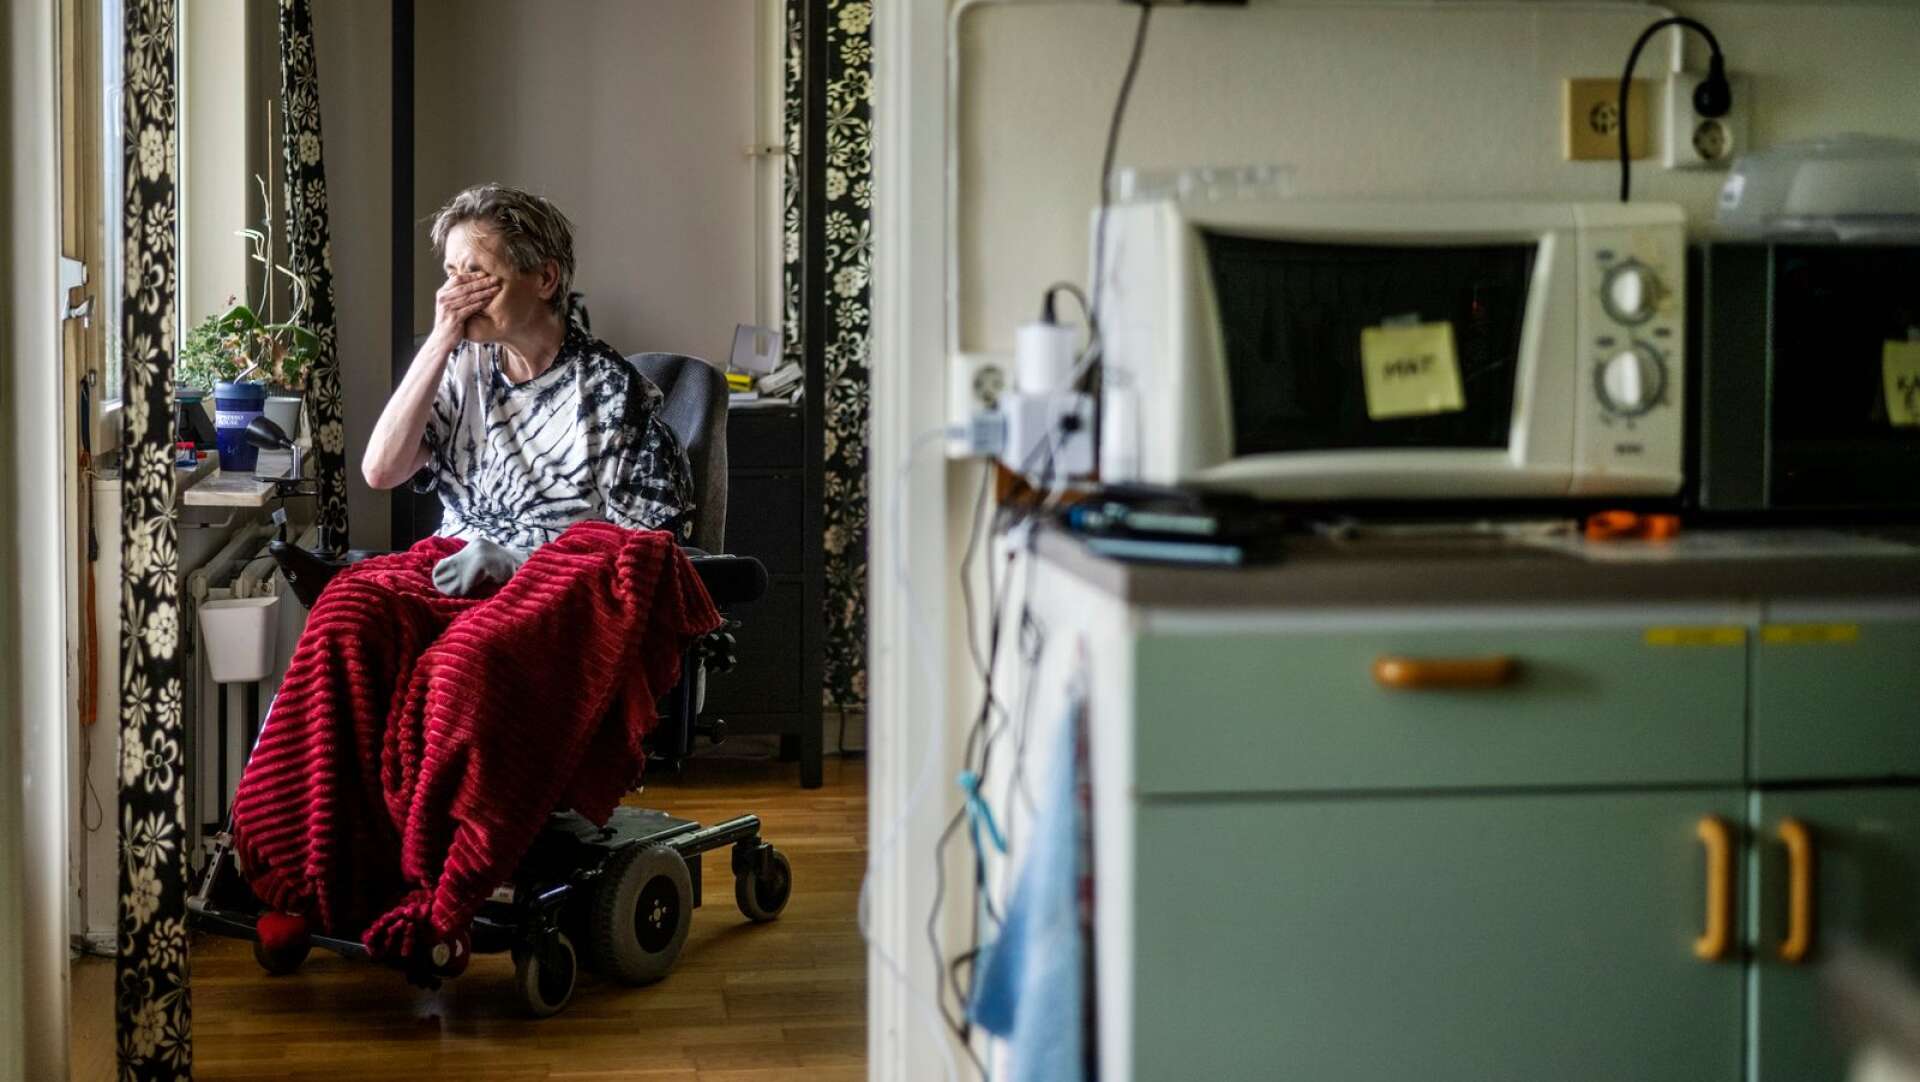 ”Man måste vara frisk för att orka vara sjuk” sa sjukpensionären Anneli Jonasson som krävdes på 9,3 miljoner av Försäkringskassan i återbetalning av felaktigt utbetalad assistansersättning. 